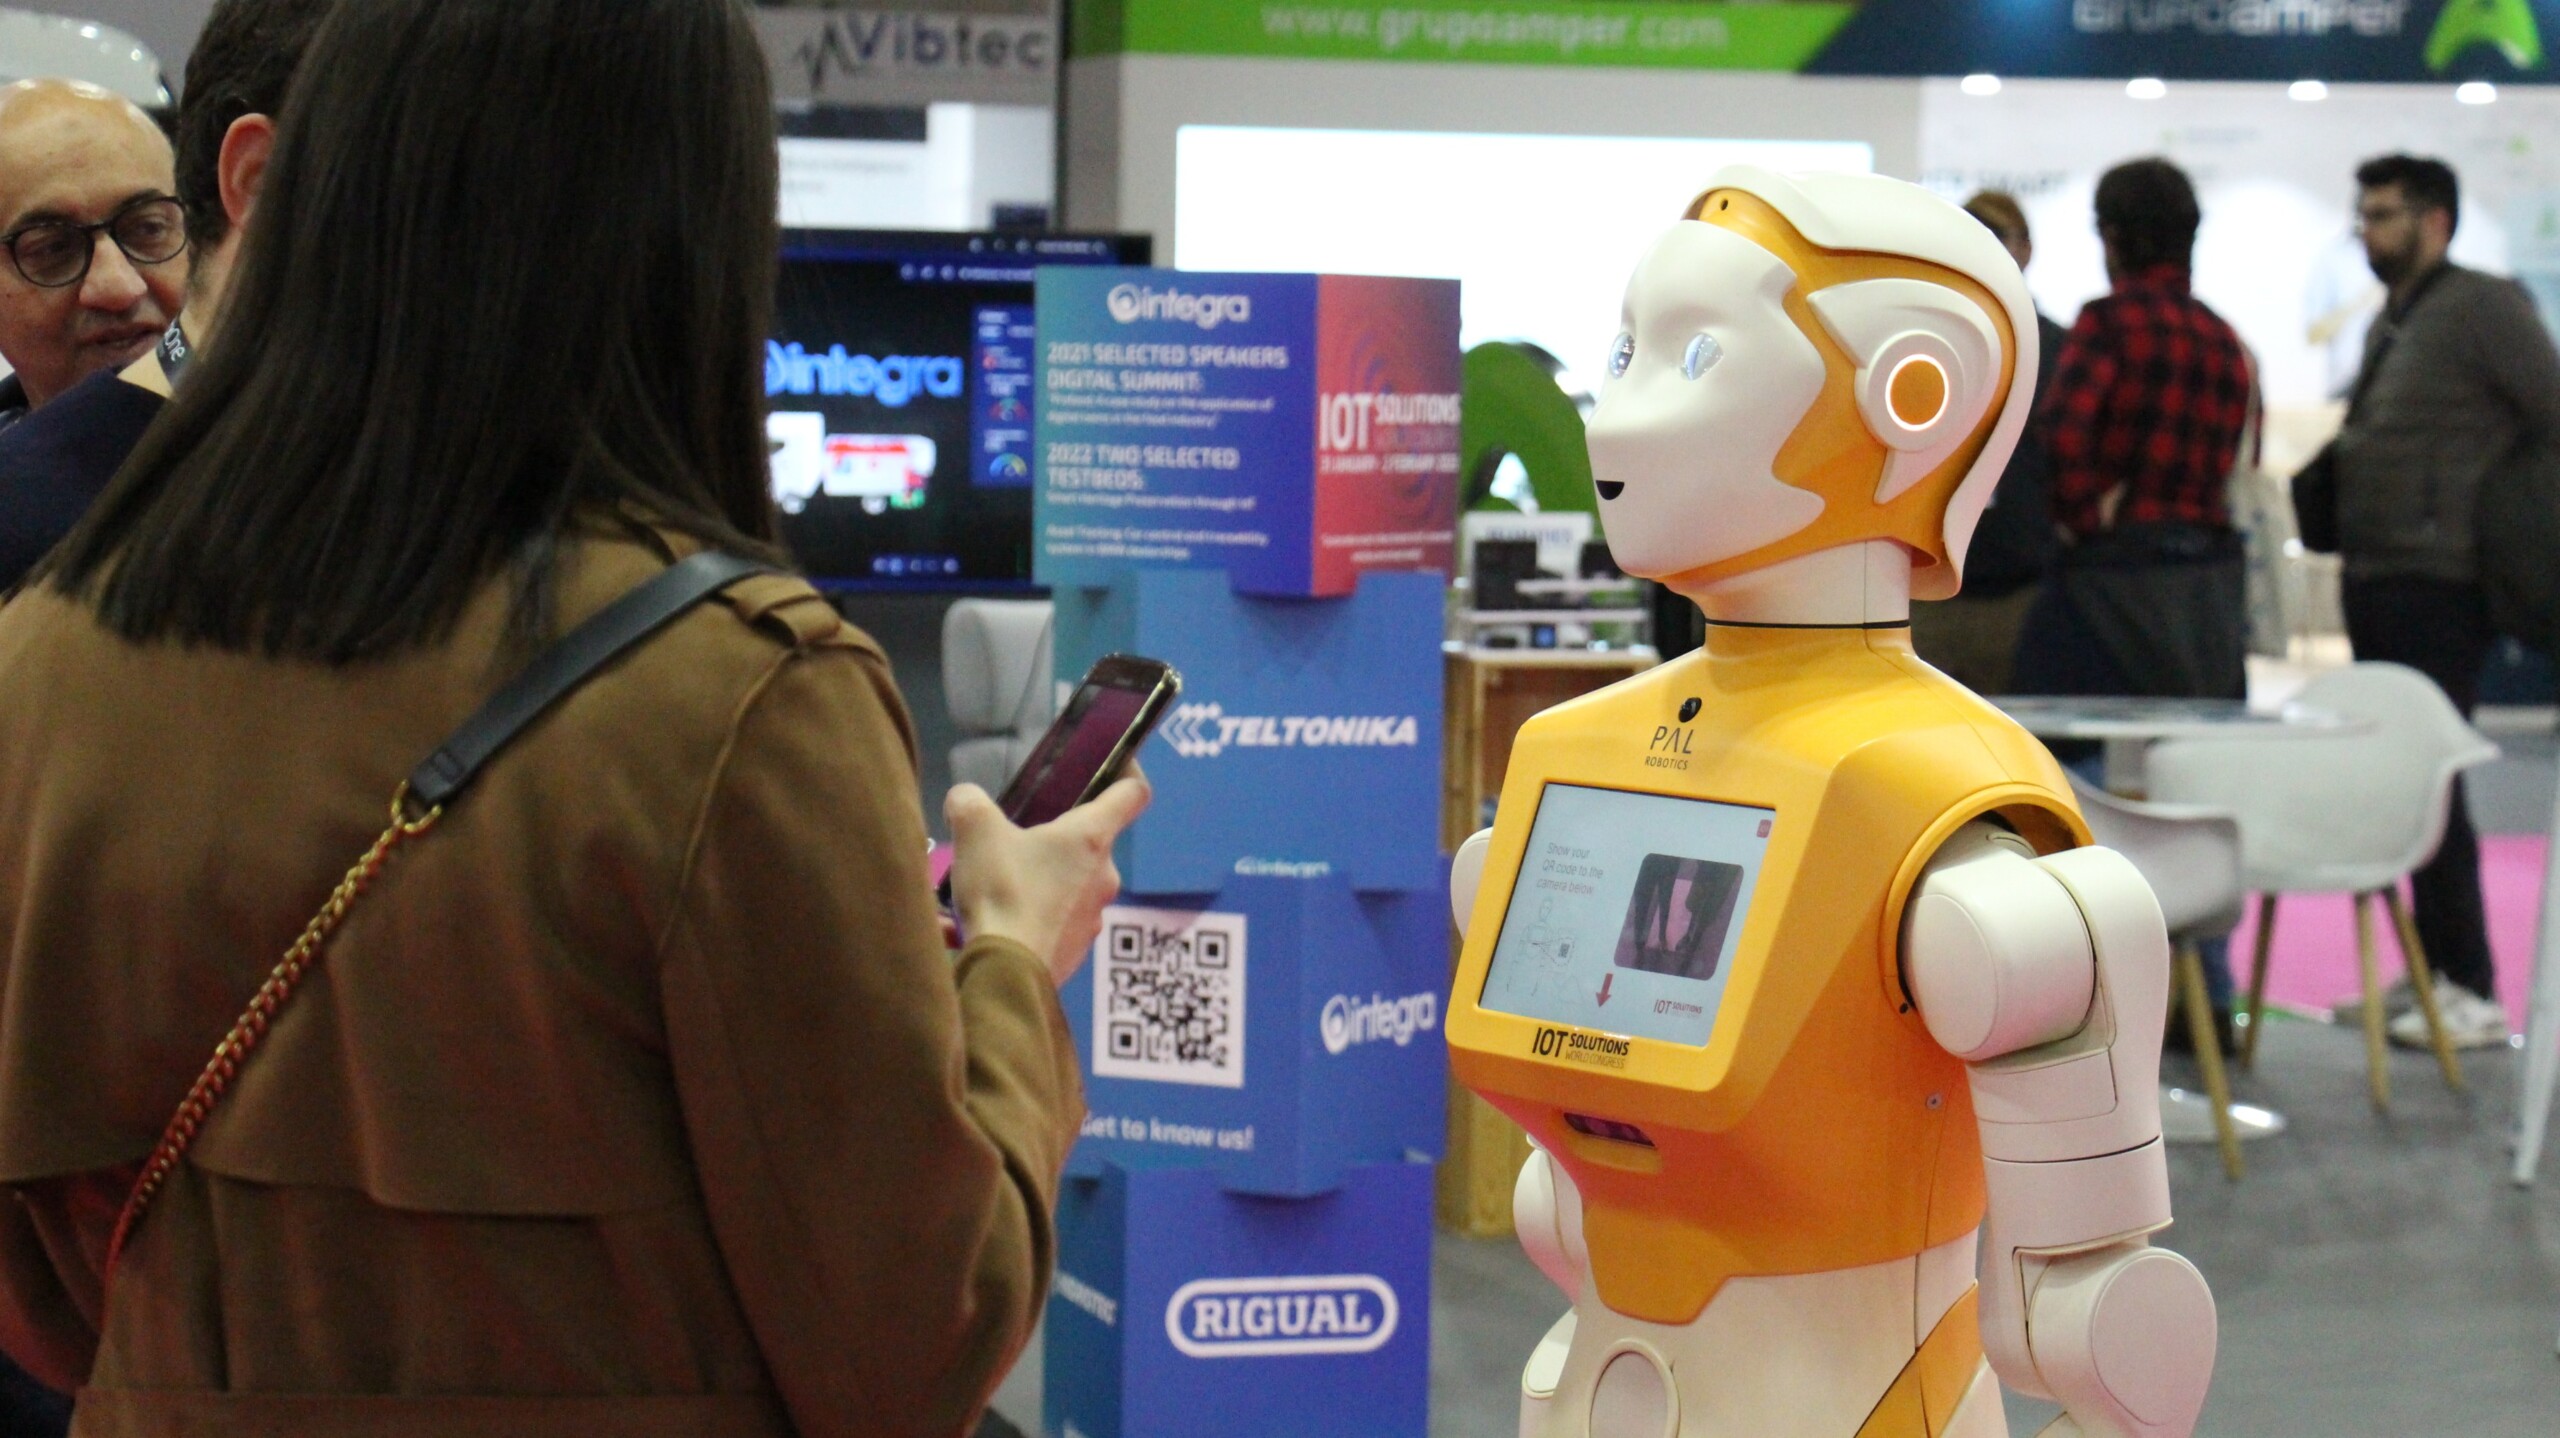 Robot ARI greets guests